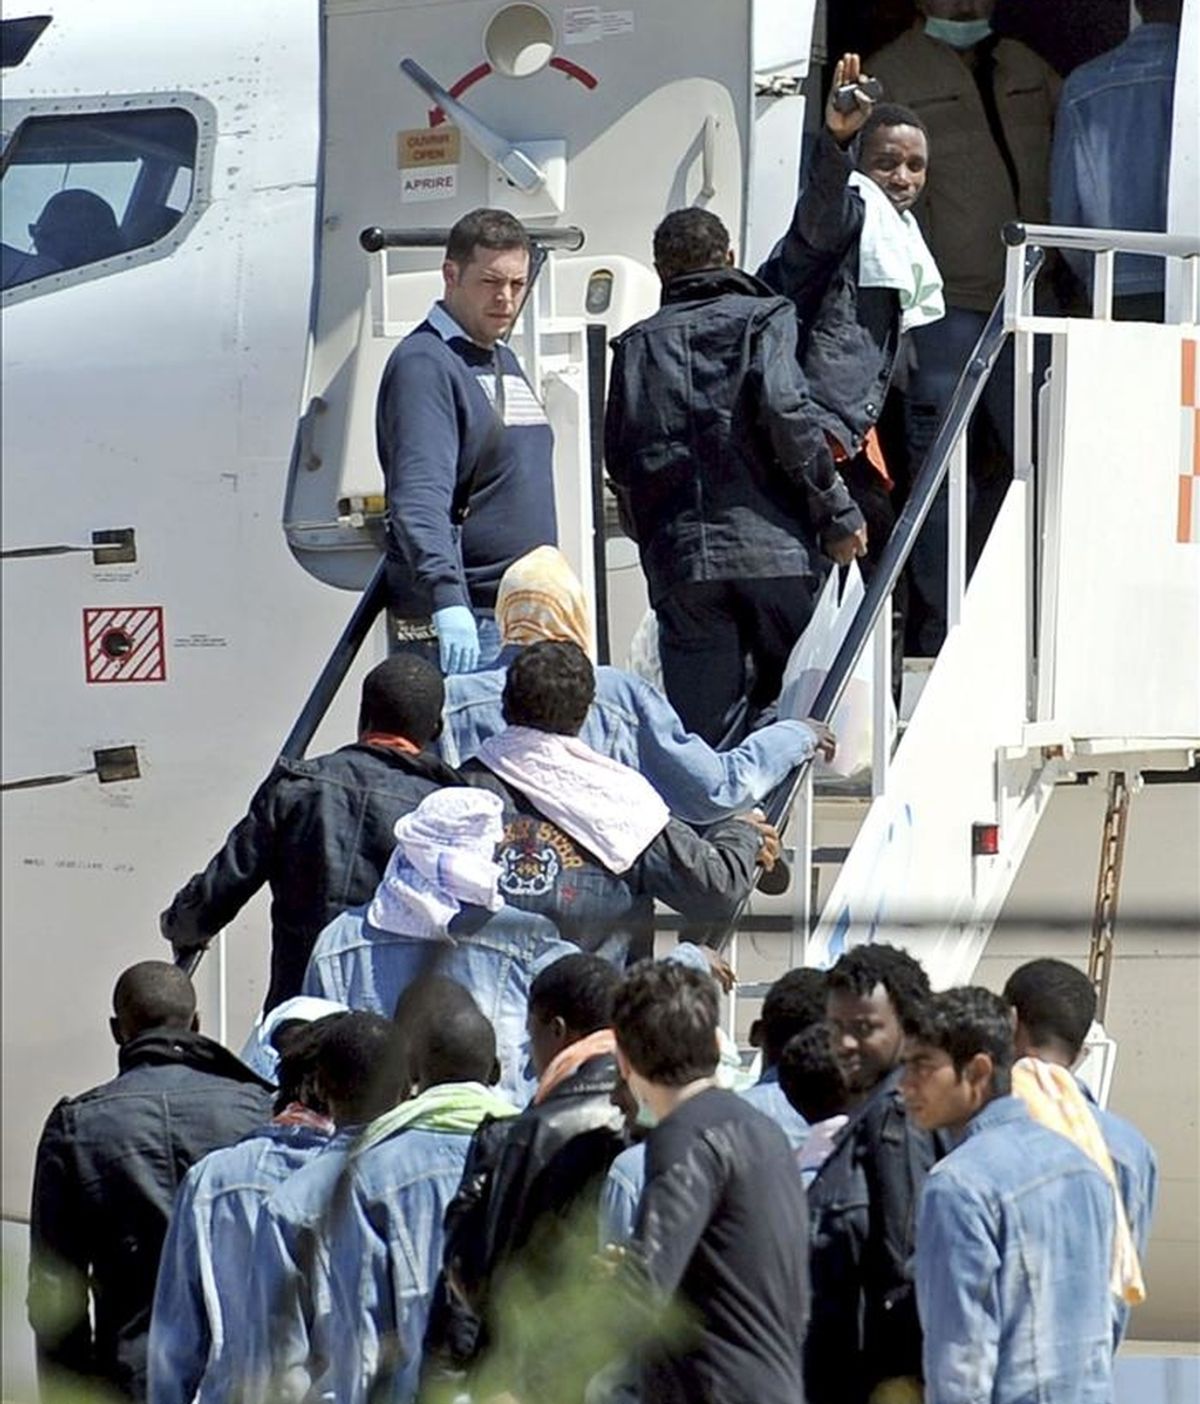 Algunos de los 53 supervivientes del naufragio de ayer en las proximidades de la isla de Lampedusa, embarcan en un avión en el aeropuerto de Lampedusa, Italia. EFE